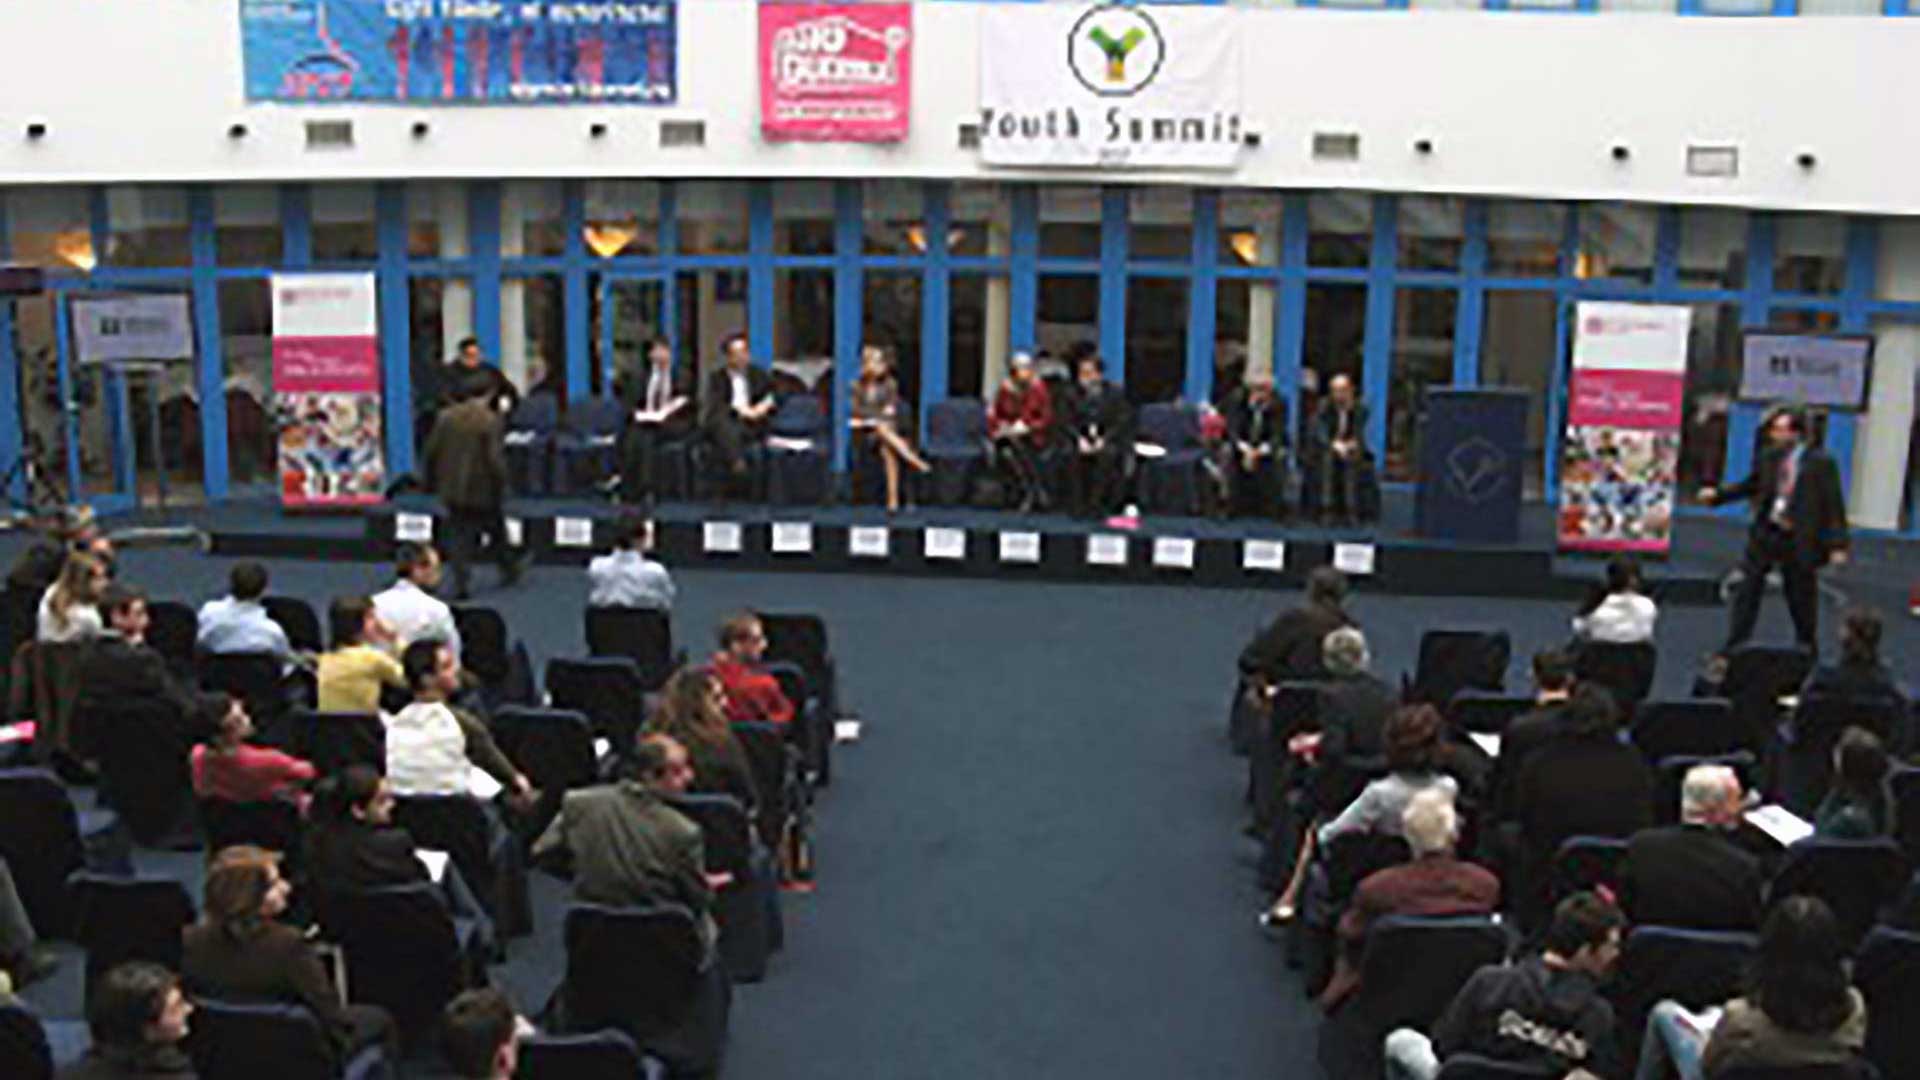 Youth Summit 2007 – Întâlnirea dedicată tinerilor din România